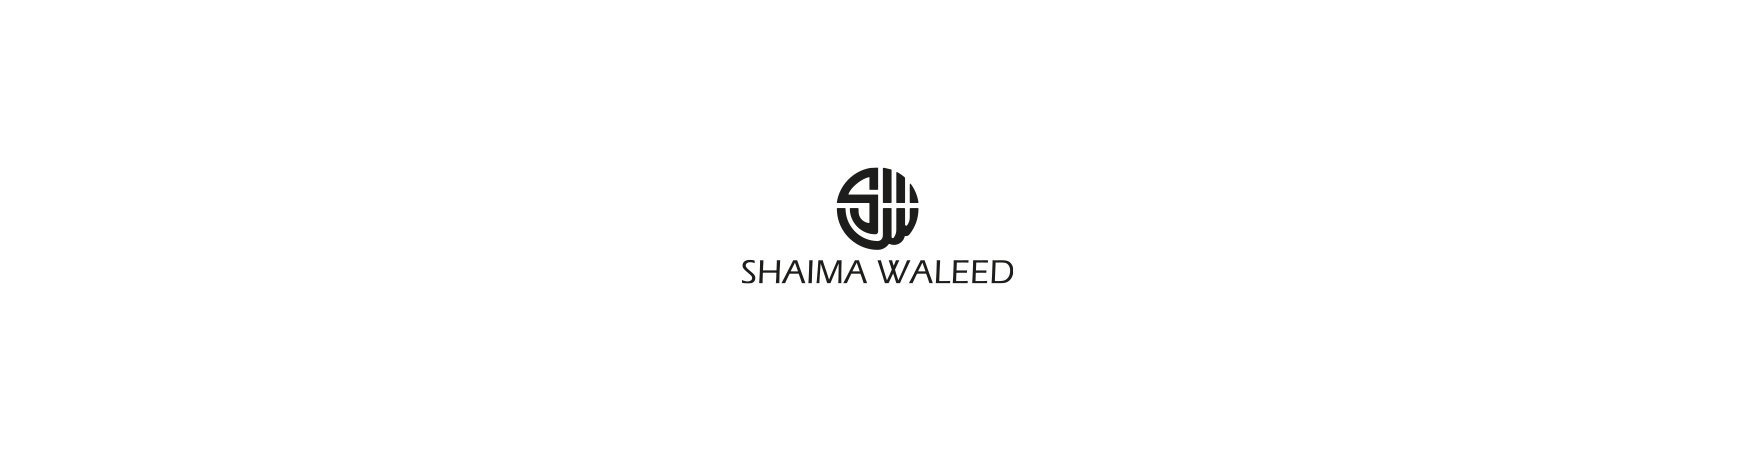 Shaimaa Waleed